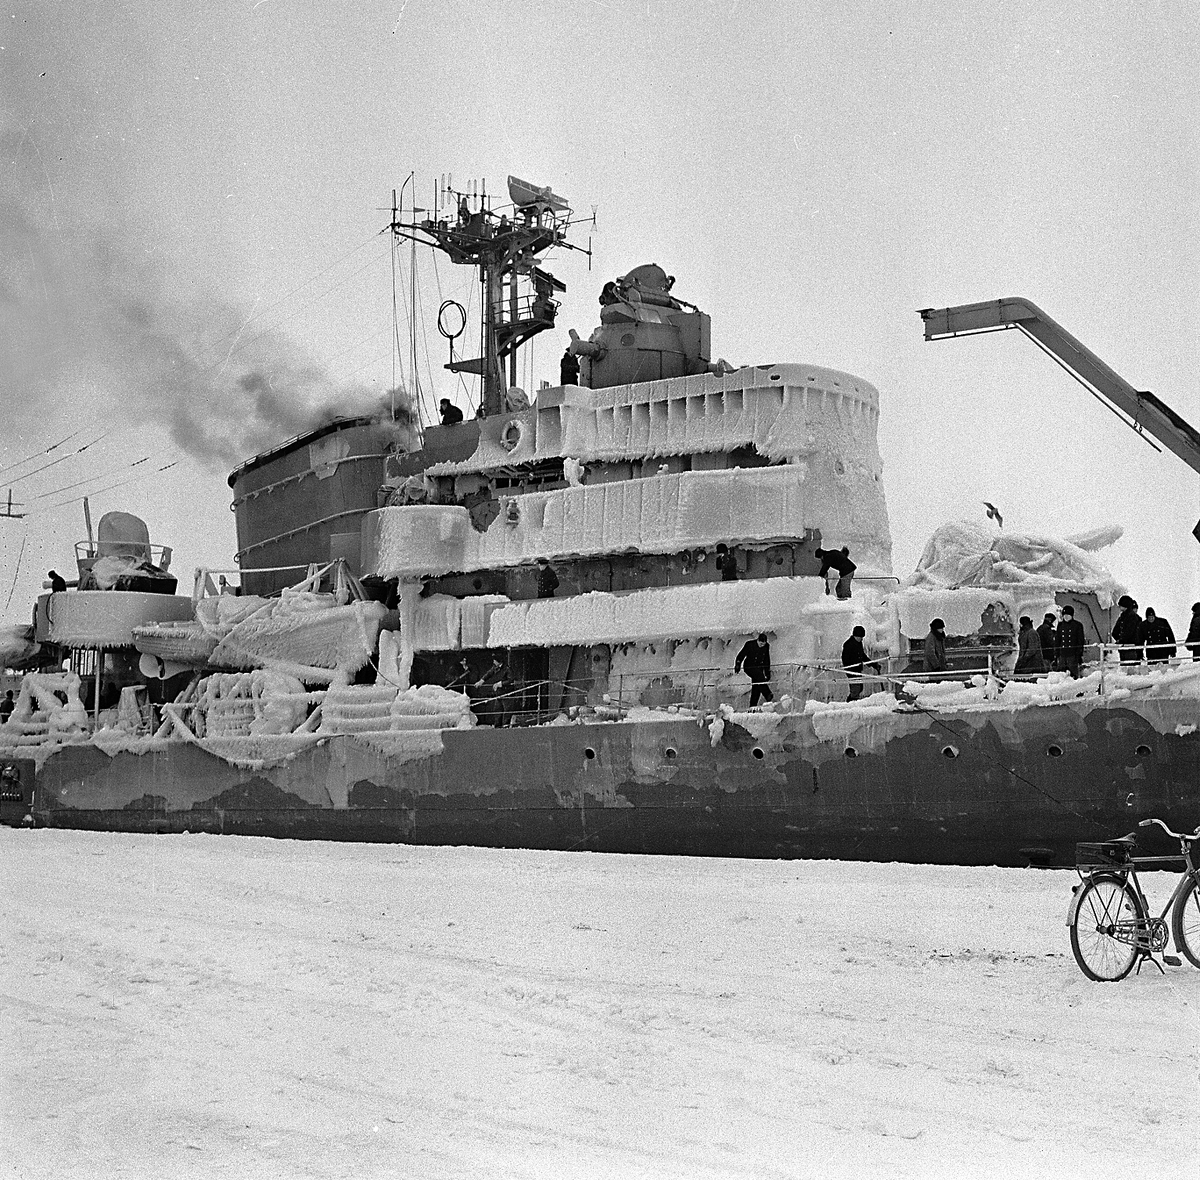 Varvet runt - en bildutställning.
Någon gång tog vintern ett hårt grepp om fartyg och varv. Vintern 1956 kom jagaren Uppland svårt nedisad till kaj.